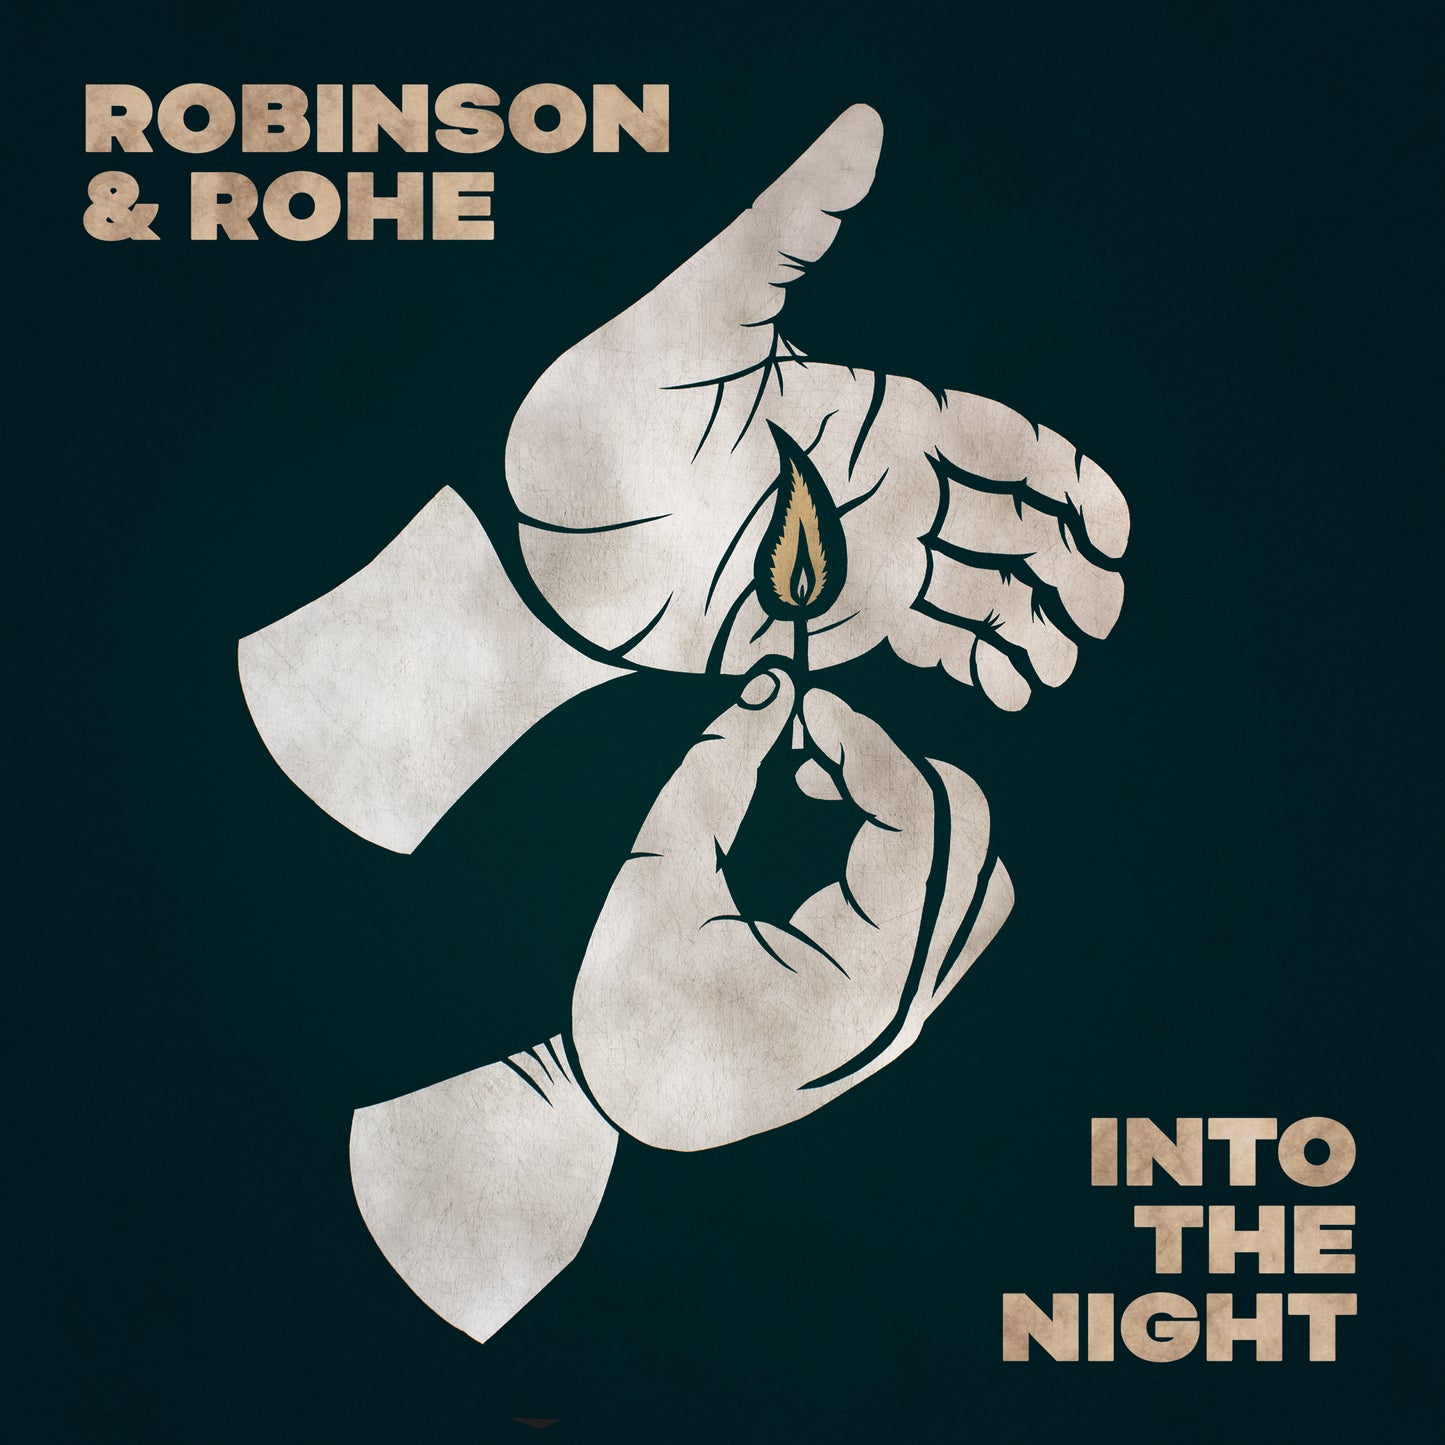 Robinson & Rohe - Into the Night (album)